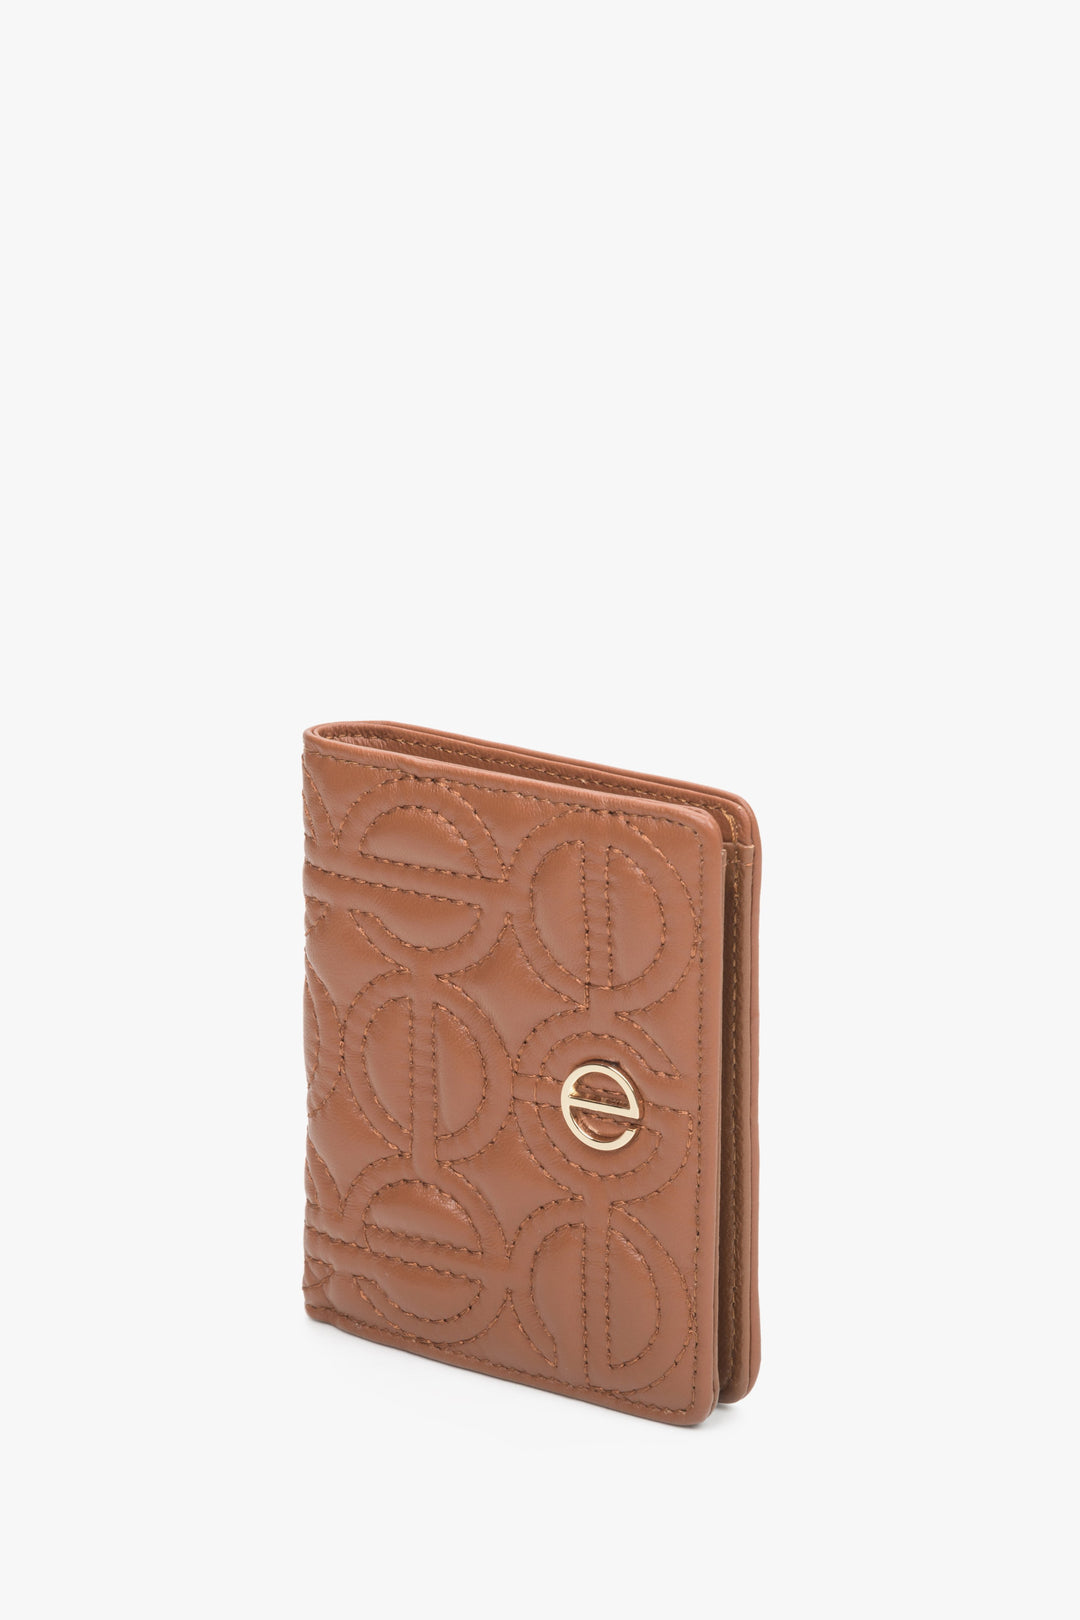 Skórzany, mały portfel damski w kolorze brązowym złotymi okuciami marki Estro.